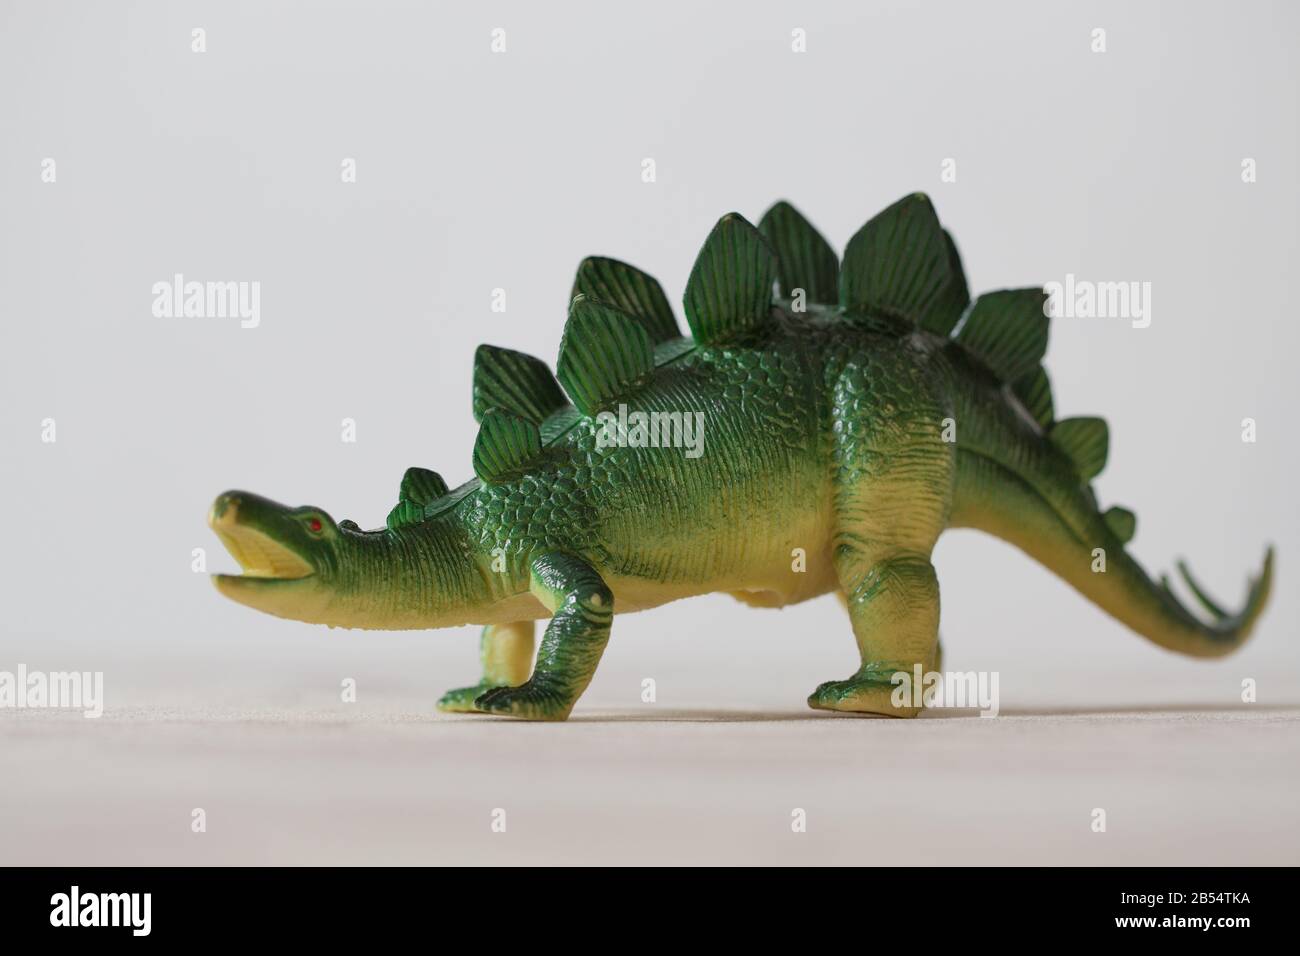 Un modello di dinosauro in plastica. Stegosaurus giocattolo per bambini. Un modello di una creatura preistorica chiamata Stegosaurus. Foto Stock